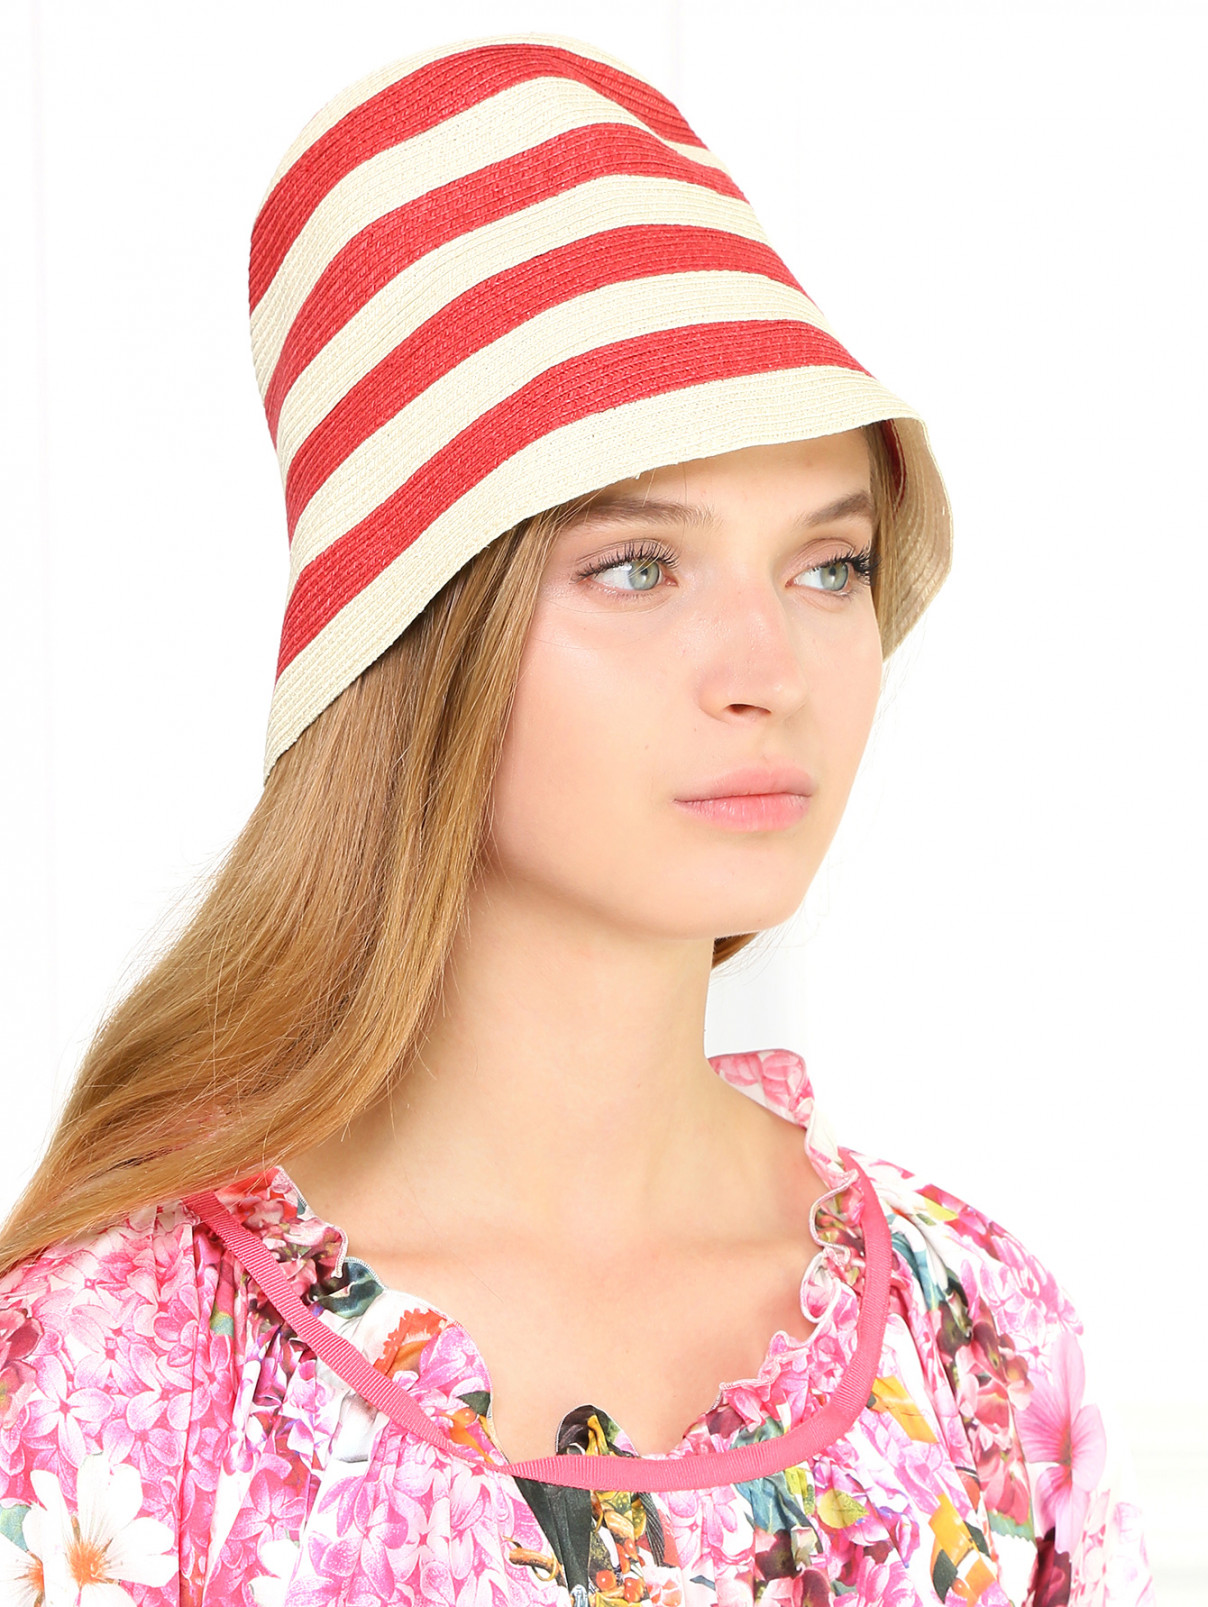 Шляпа из целлюлозы с узором "полоска" S Max Mara  –  Модель Общий вид  – Цвет:  Узор